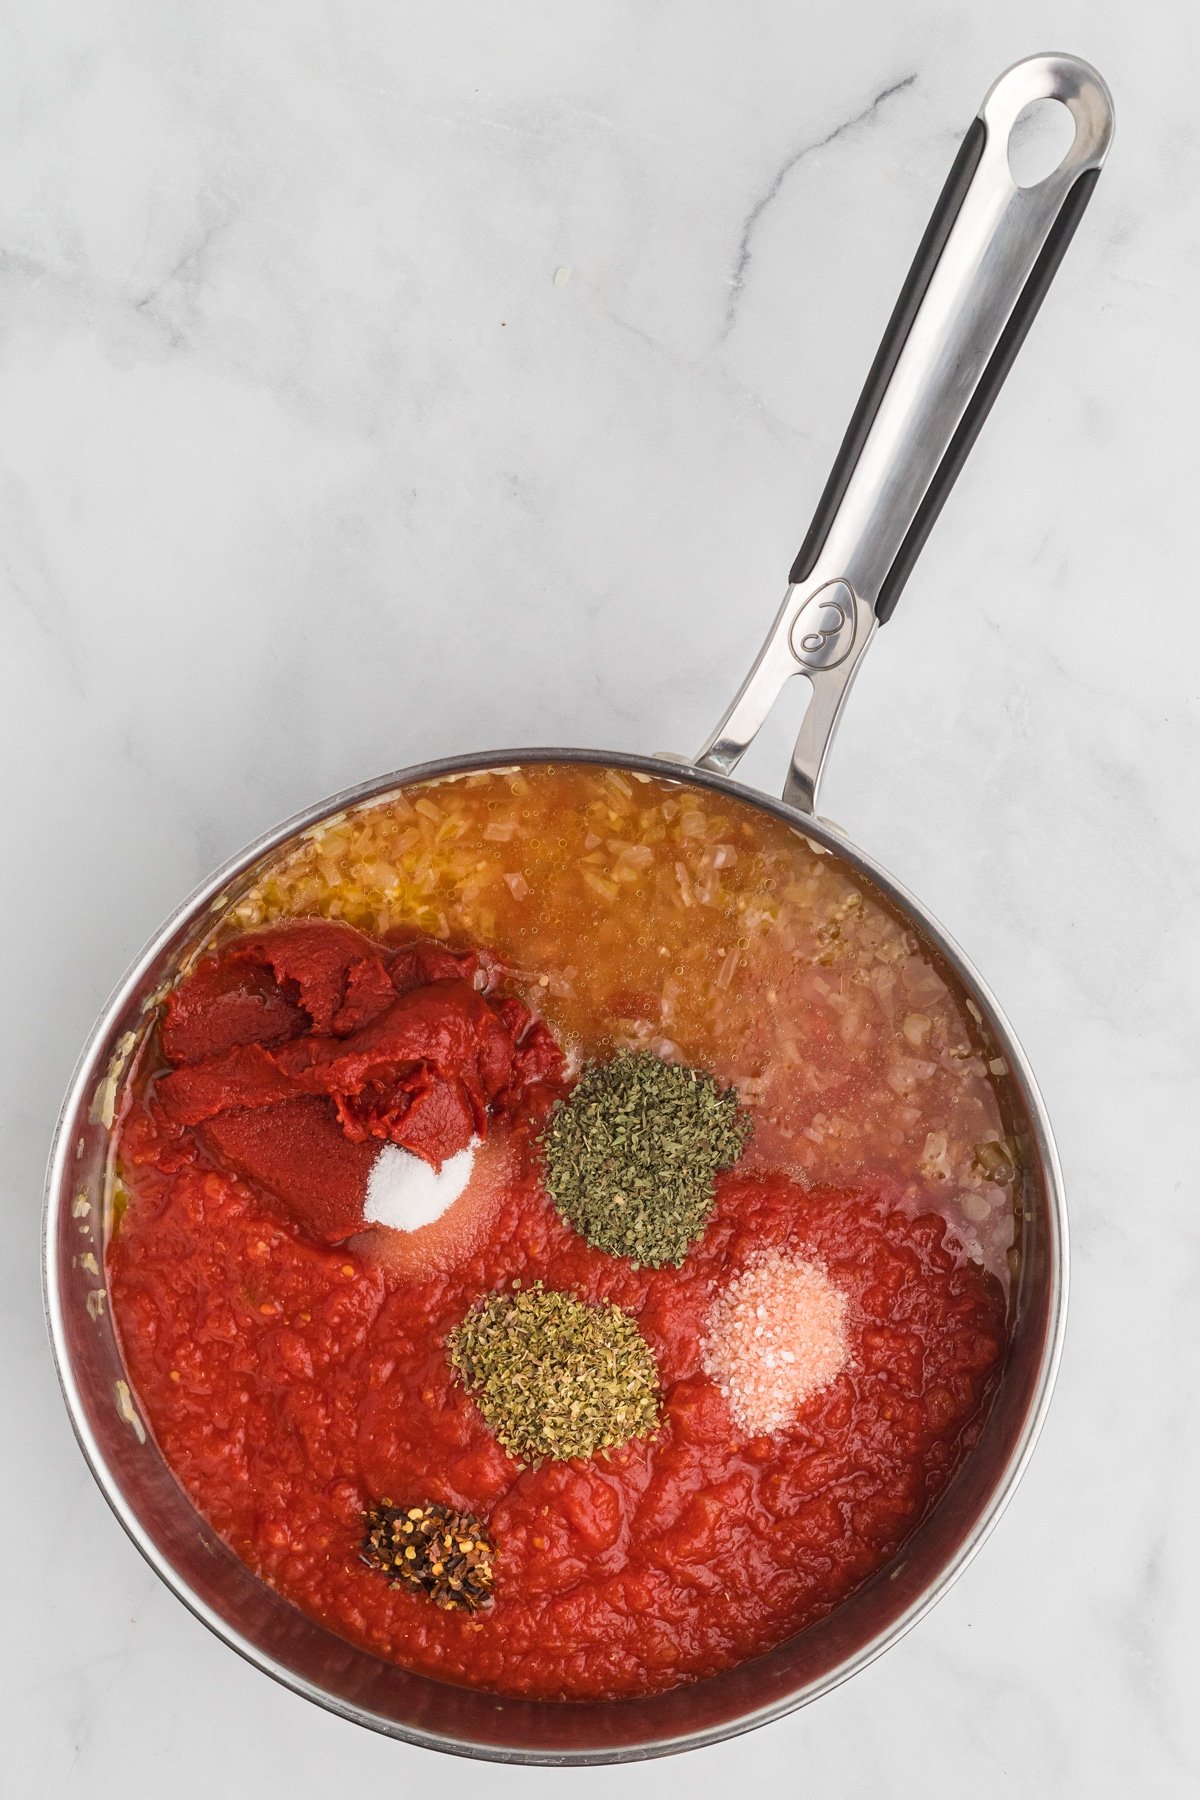 Marinara sauce ingredients in a pan